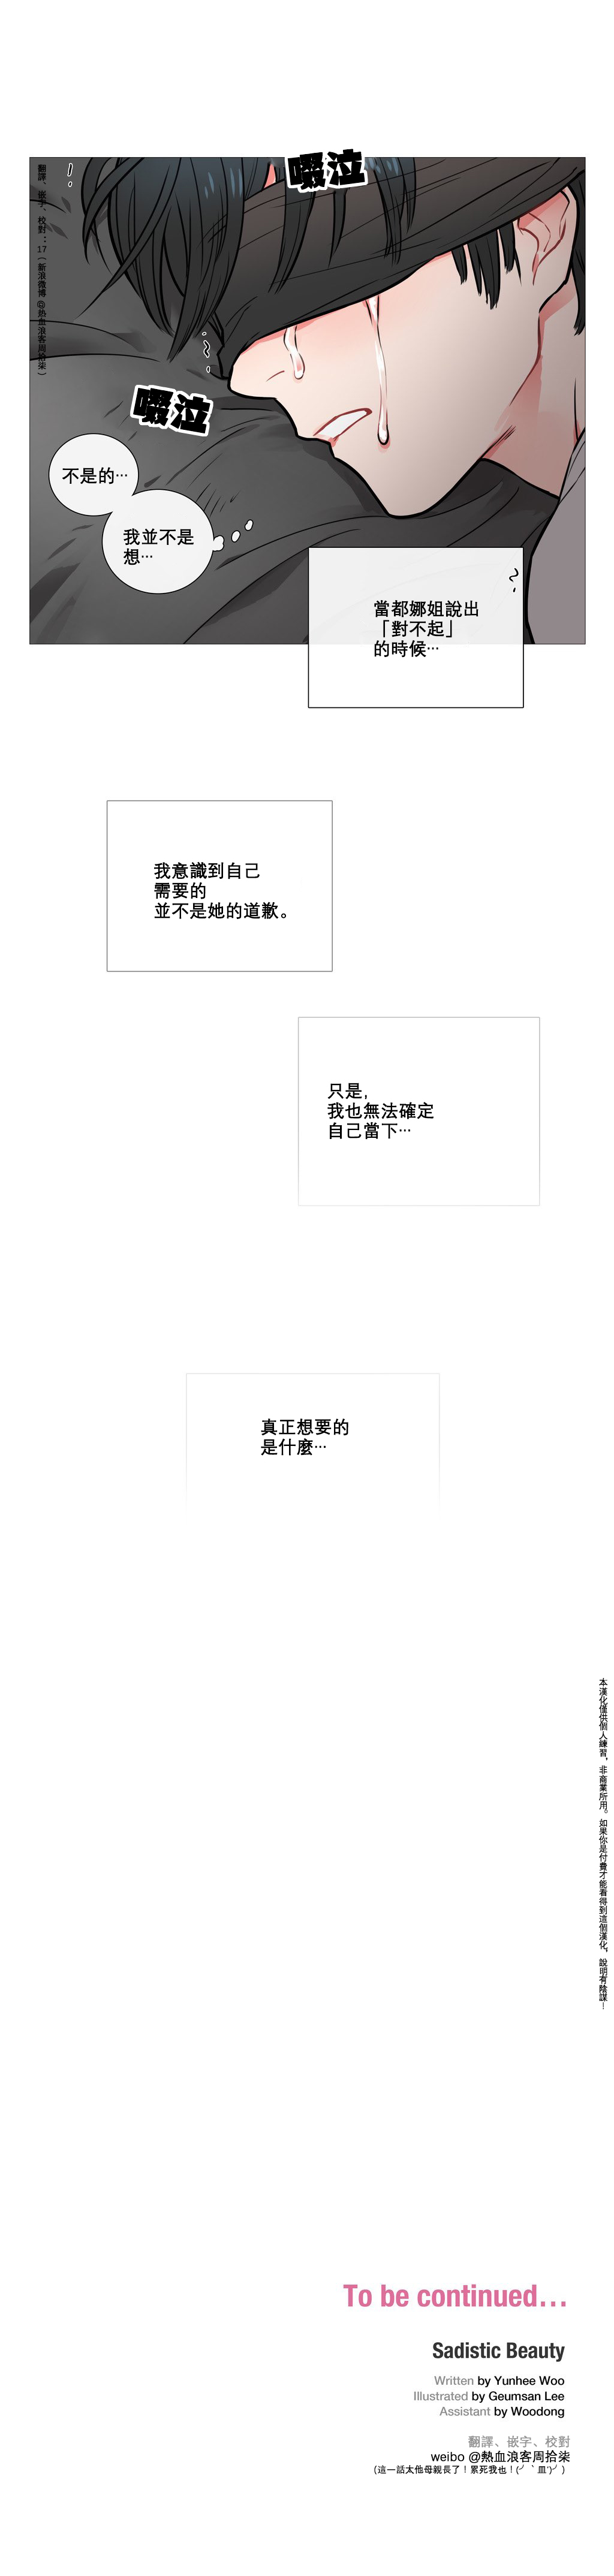 【ジンシャン】サディスティックビューティーCh.1-26【中国語】【17汉化】